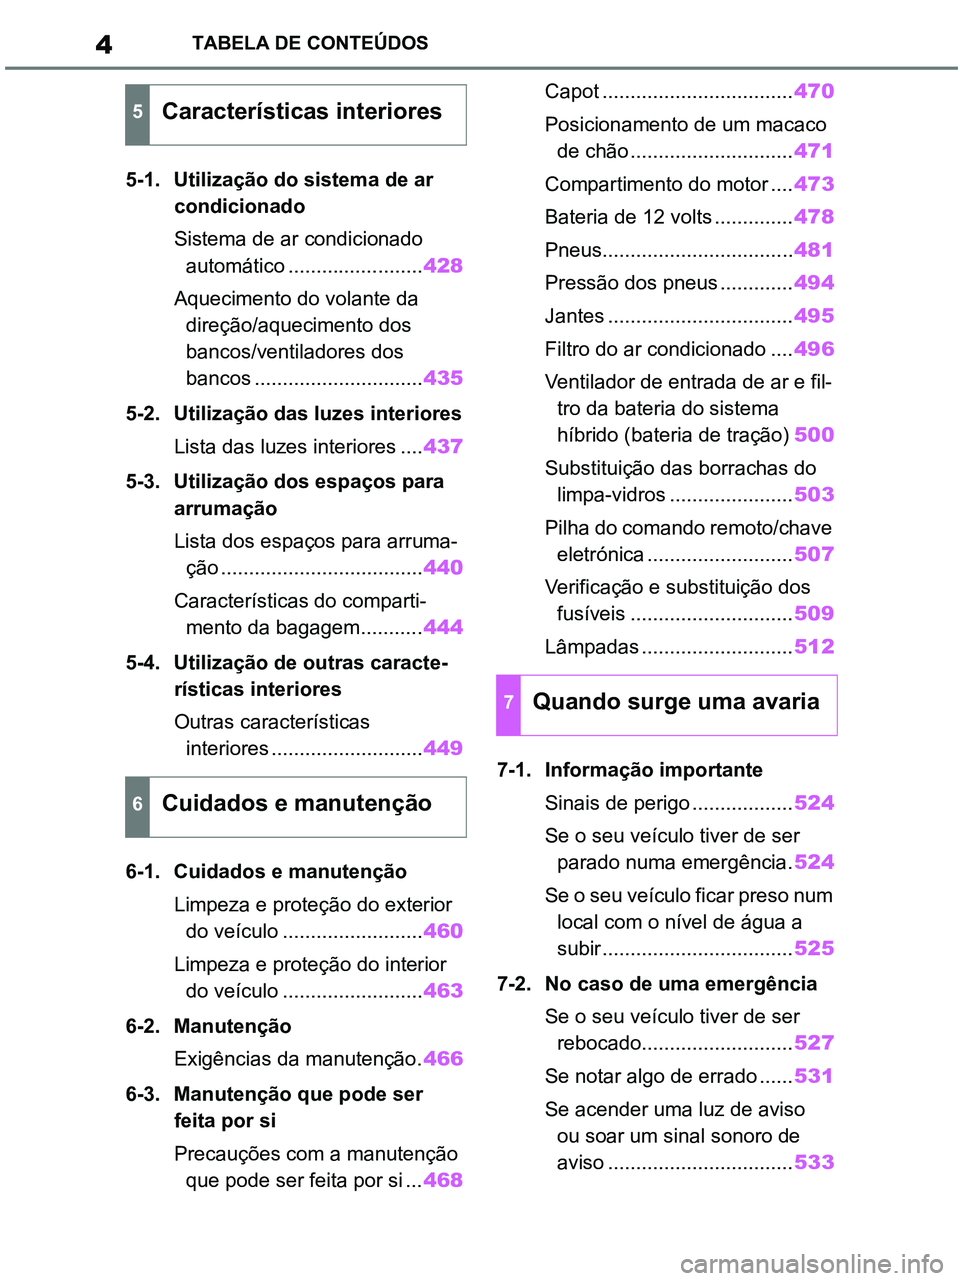 TOYOTA RAV4 2020  Manual de utilização (in Portuguese) 4TABELA DE CONTEÚDOS
5-1. Utilização do sistema de ar 
condicionado
Sistema de ar condicionado 
automático ........................428
Aquecimento do volante da 
direção/aquecimento dos 
bancos/